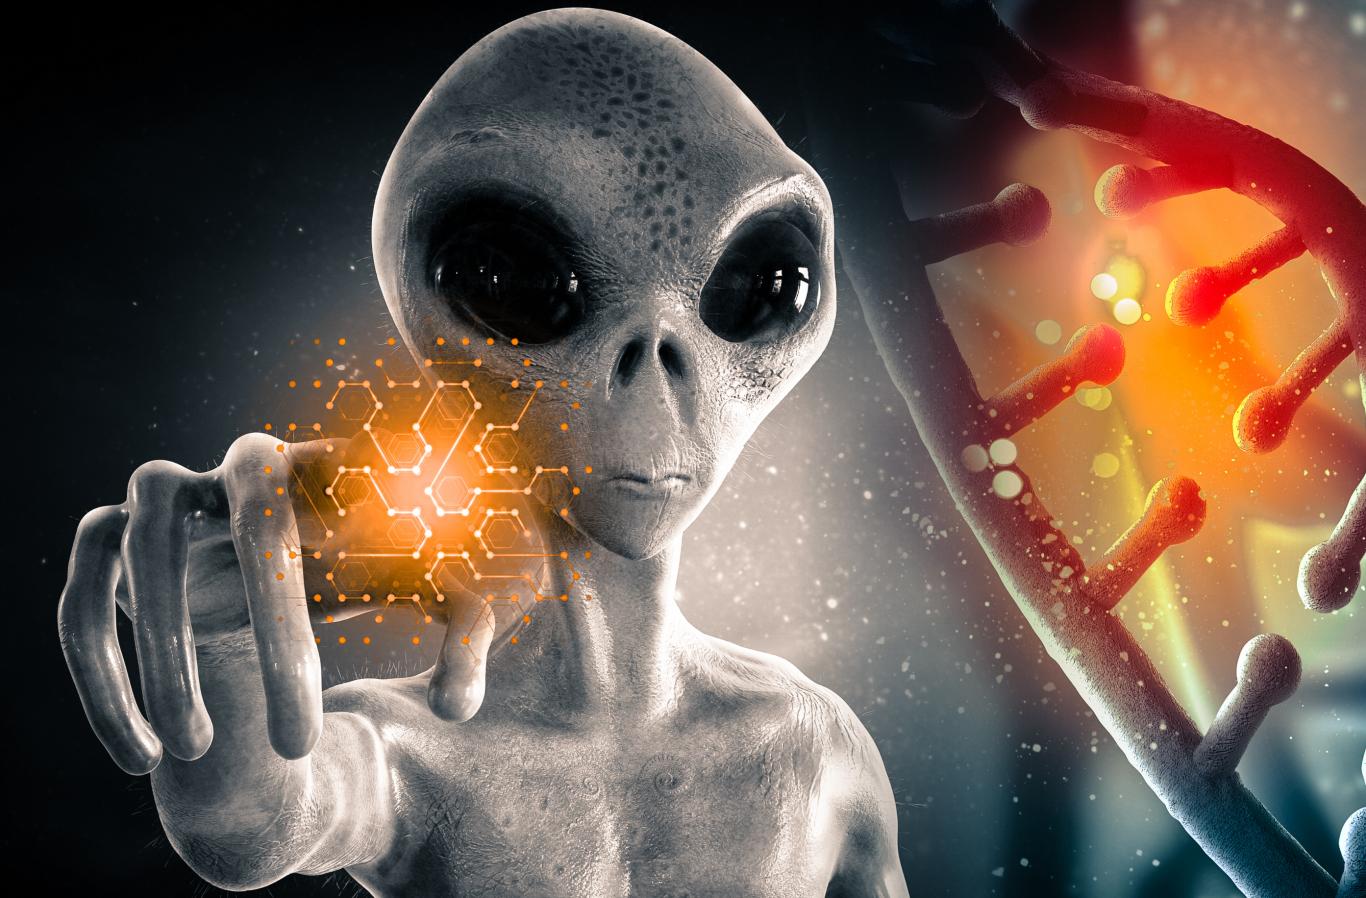 Могли ли инопланетяне генетически сконструировать Homo sapiens 780,000 2 лет назад? XNUMX